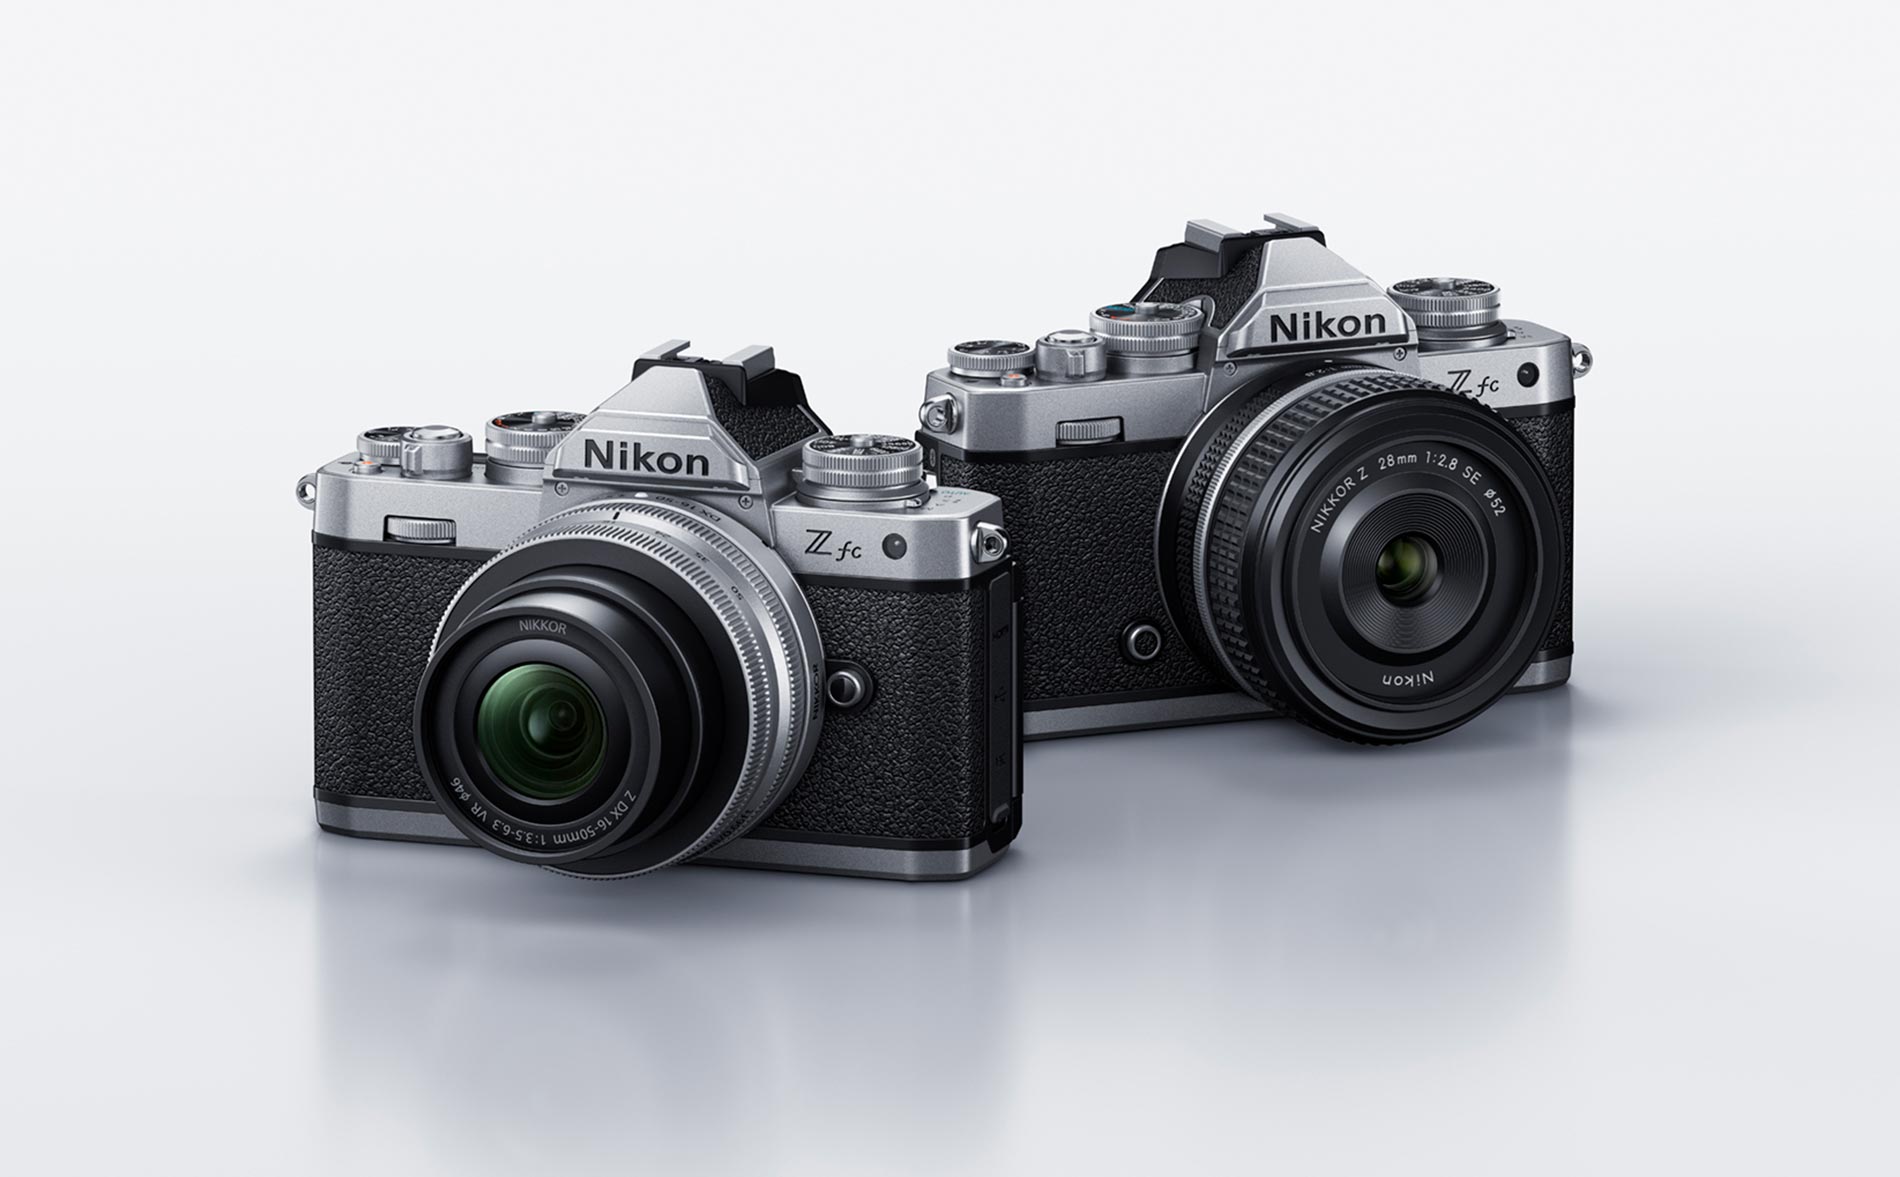 ニコンDXフォーマットミラーレスカメラ「ニコン Z fc」を発売 